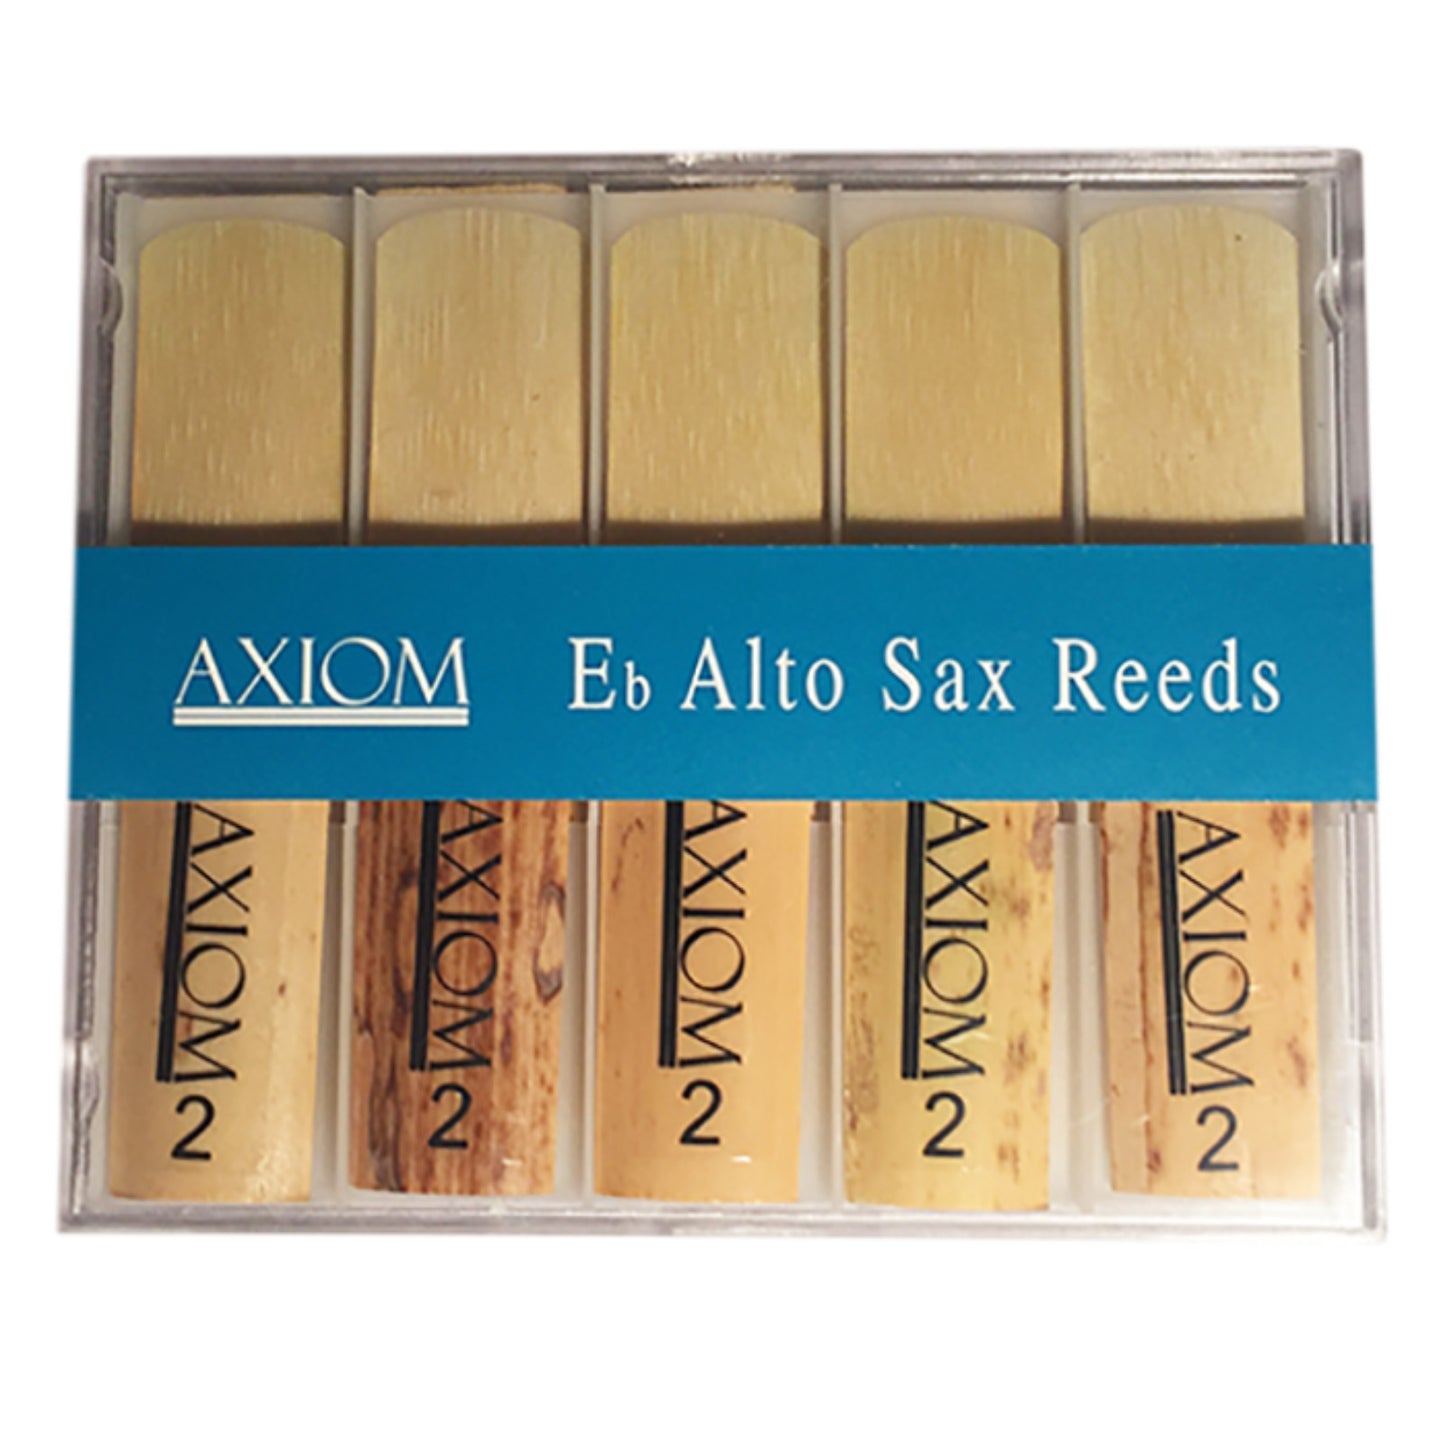 Axiom Alto Sax Reed 2.0 - Box of Ten